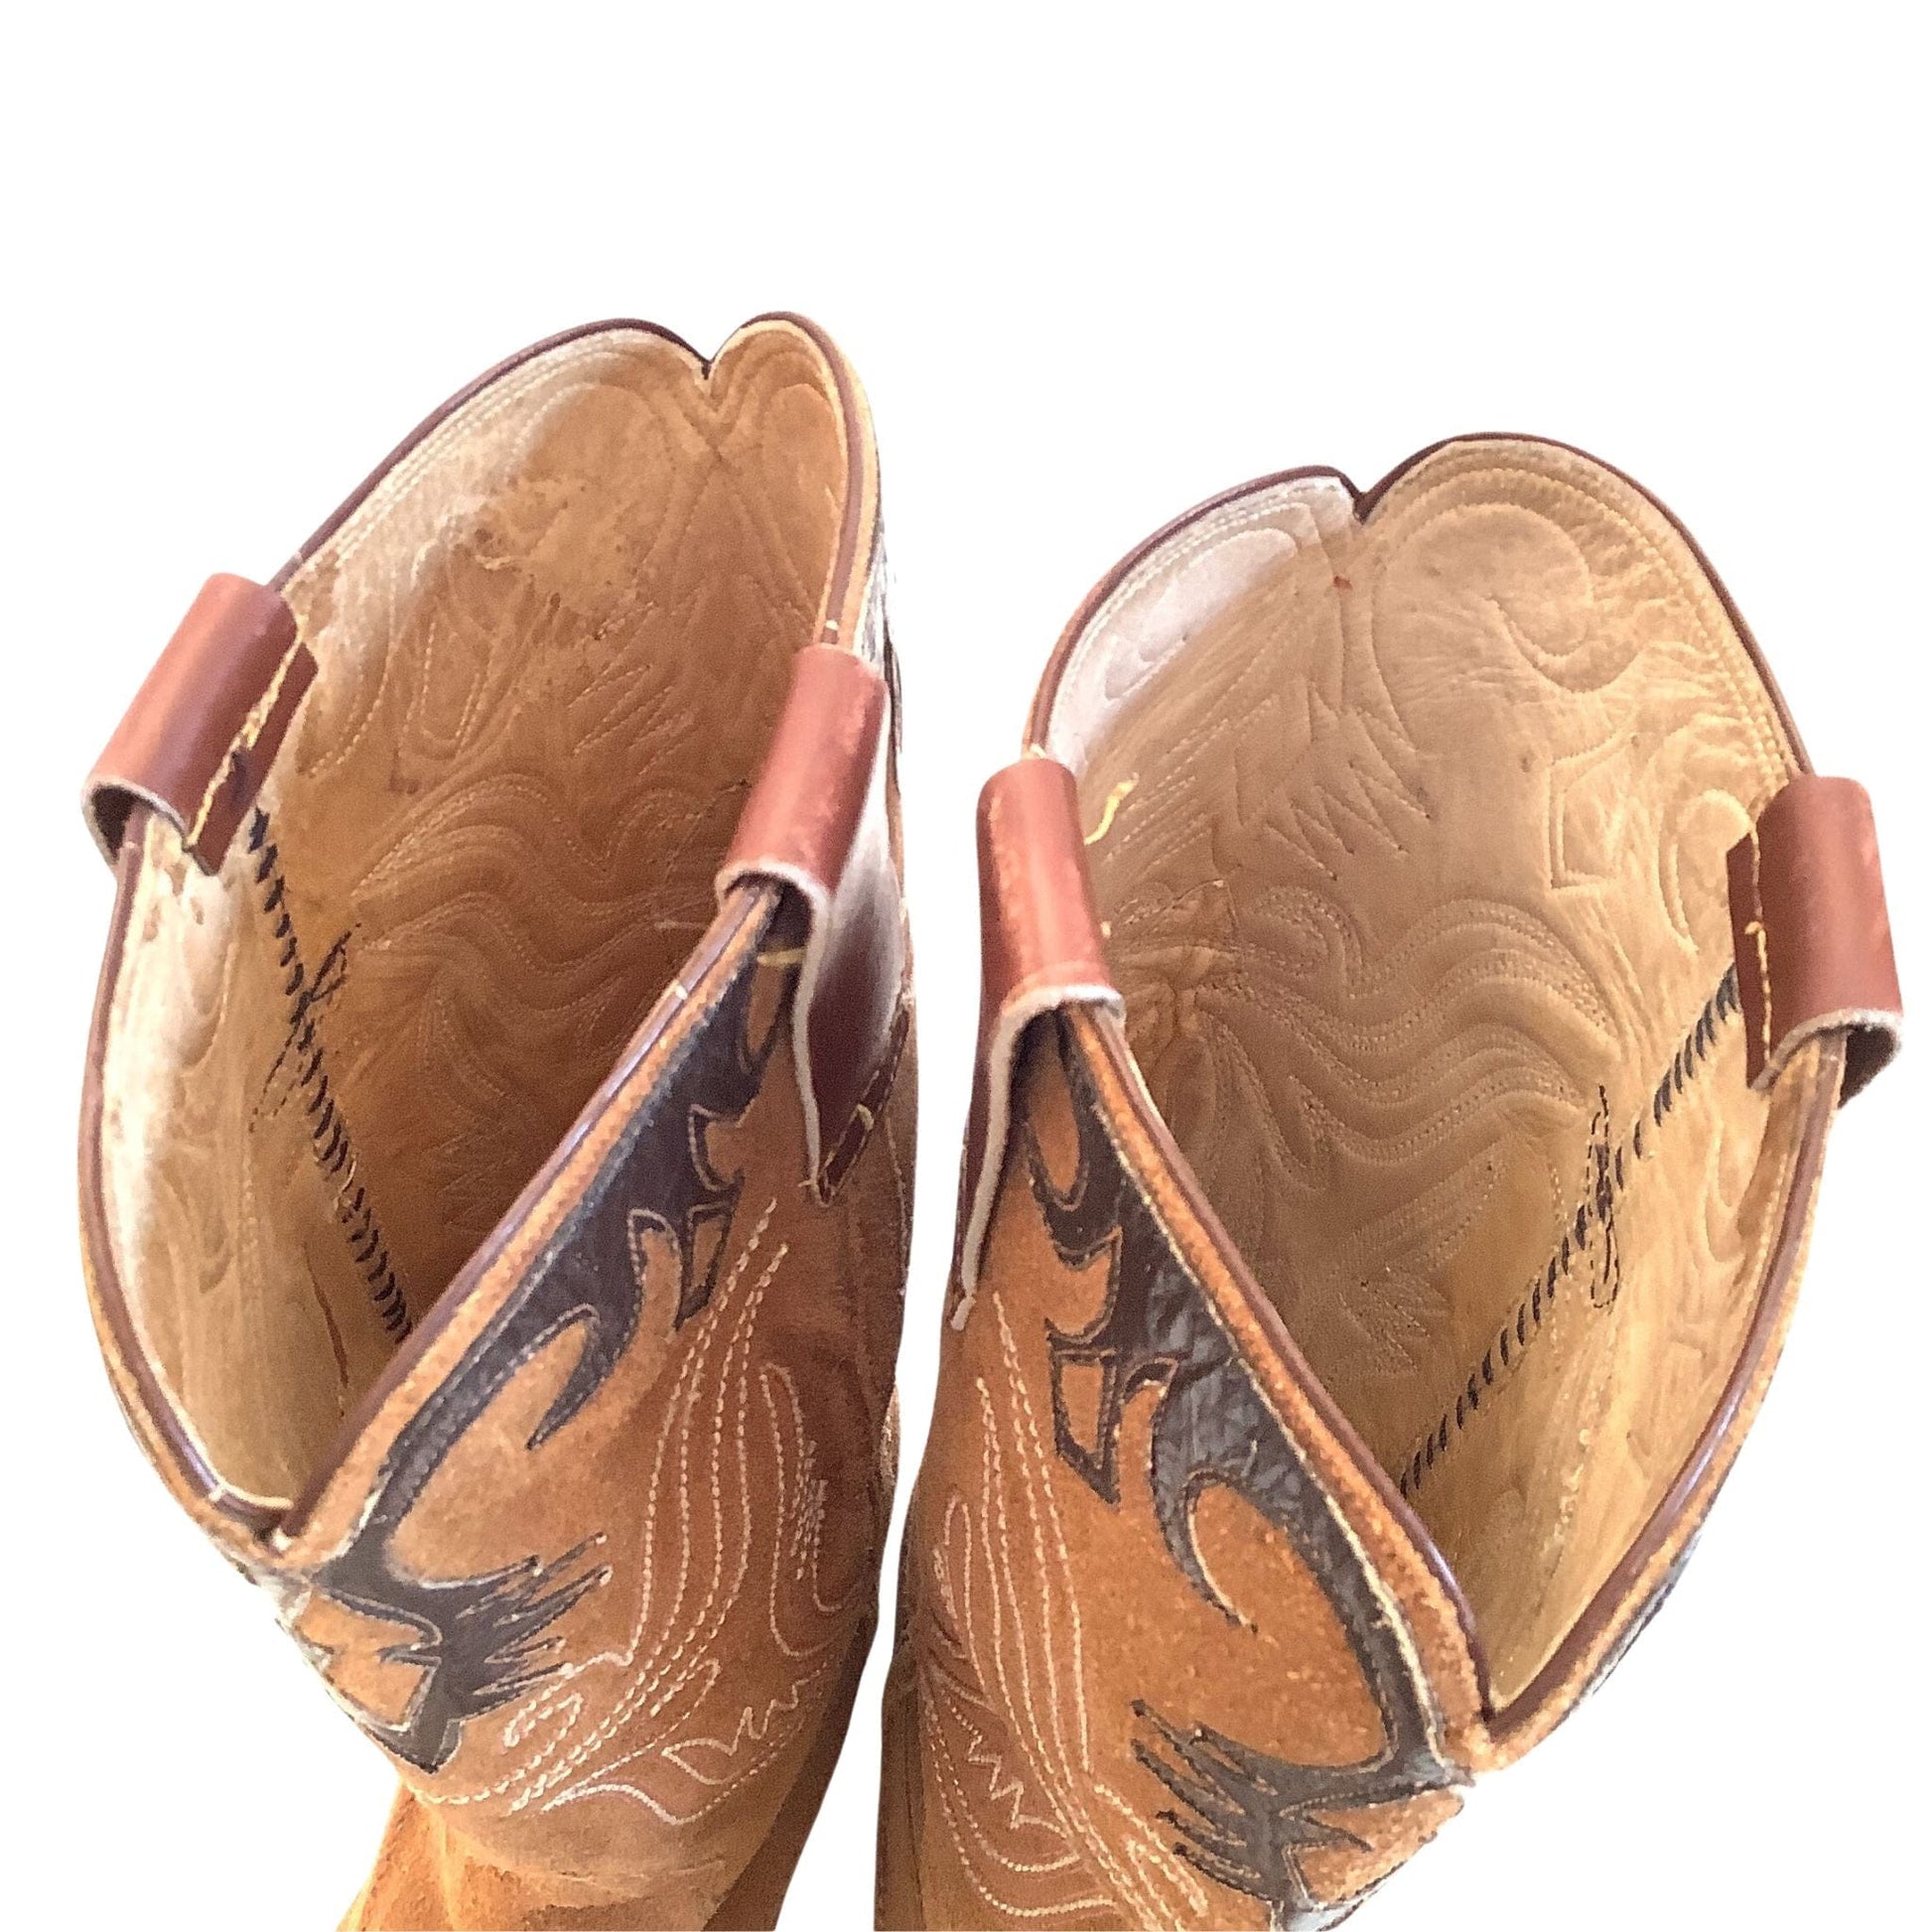 Fancy Cowboy Boots 7 / Tan / Vintage 1950s